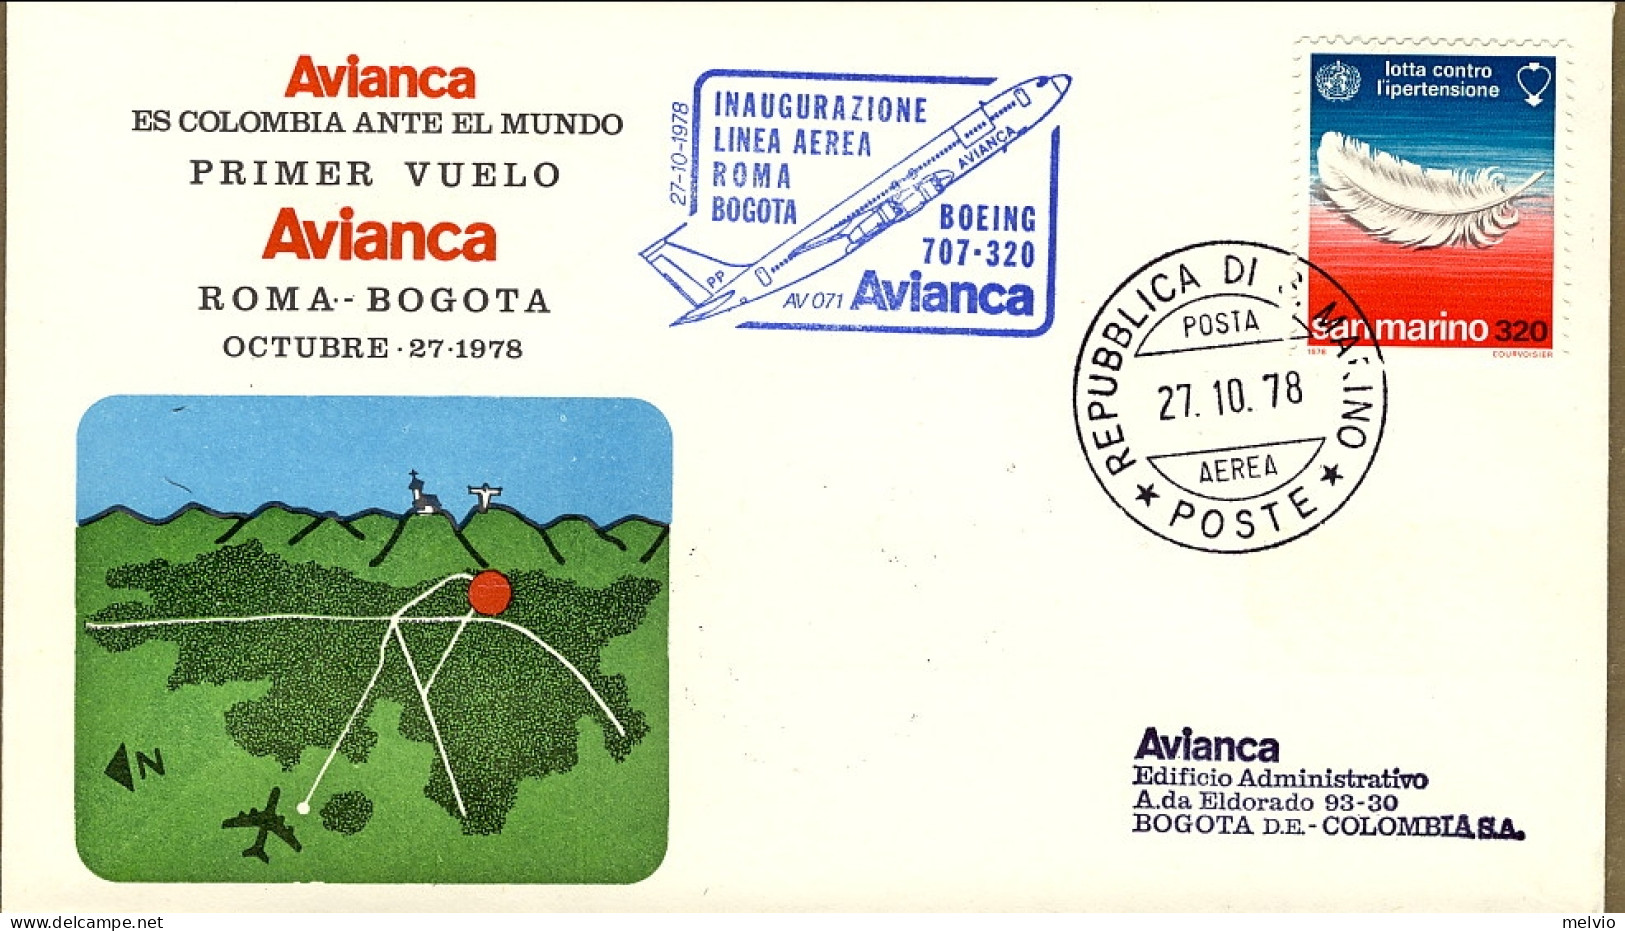 San Marino-1978 Inaugurazione Linea Aerea Roma Bogota Con Boeing 707-320 Avianca - Airmail